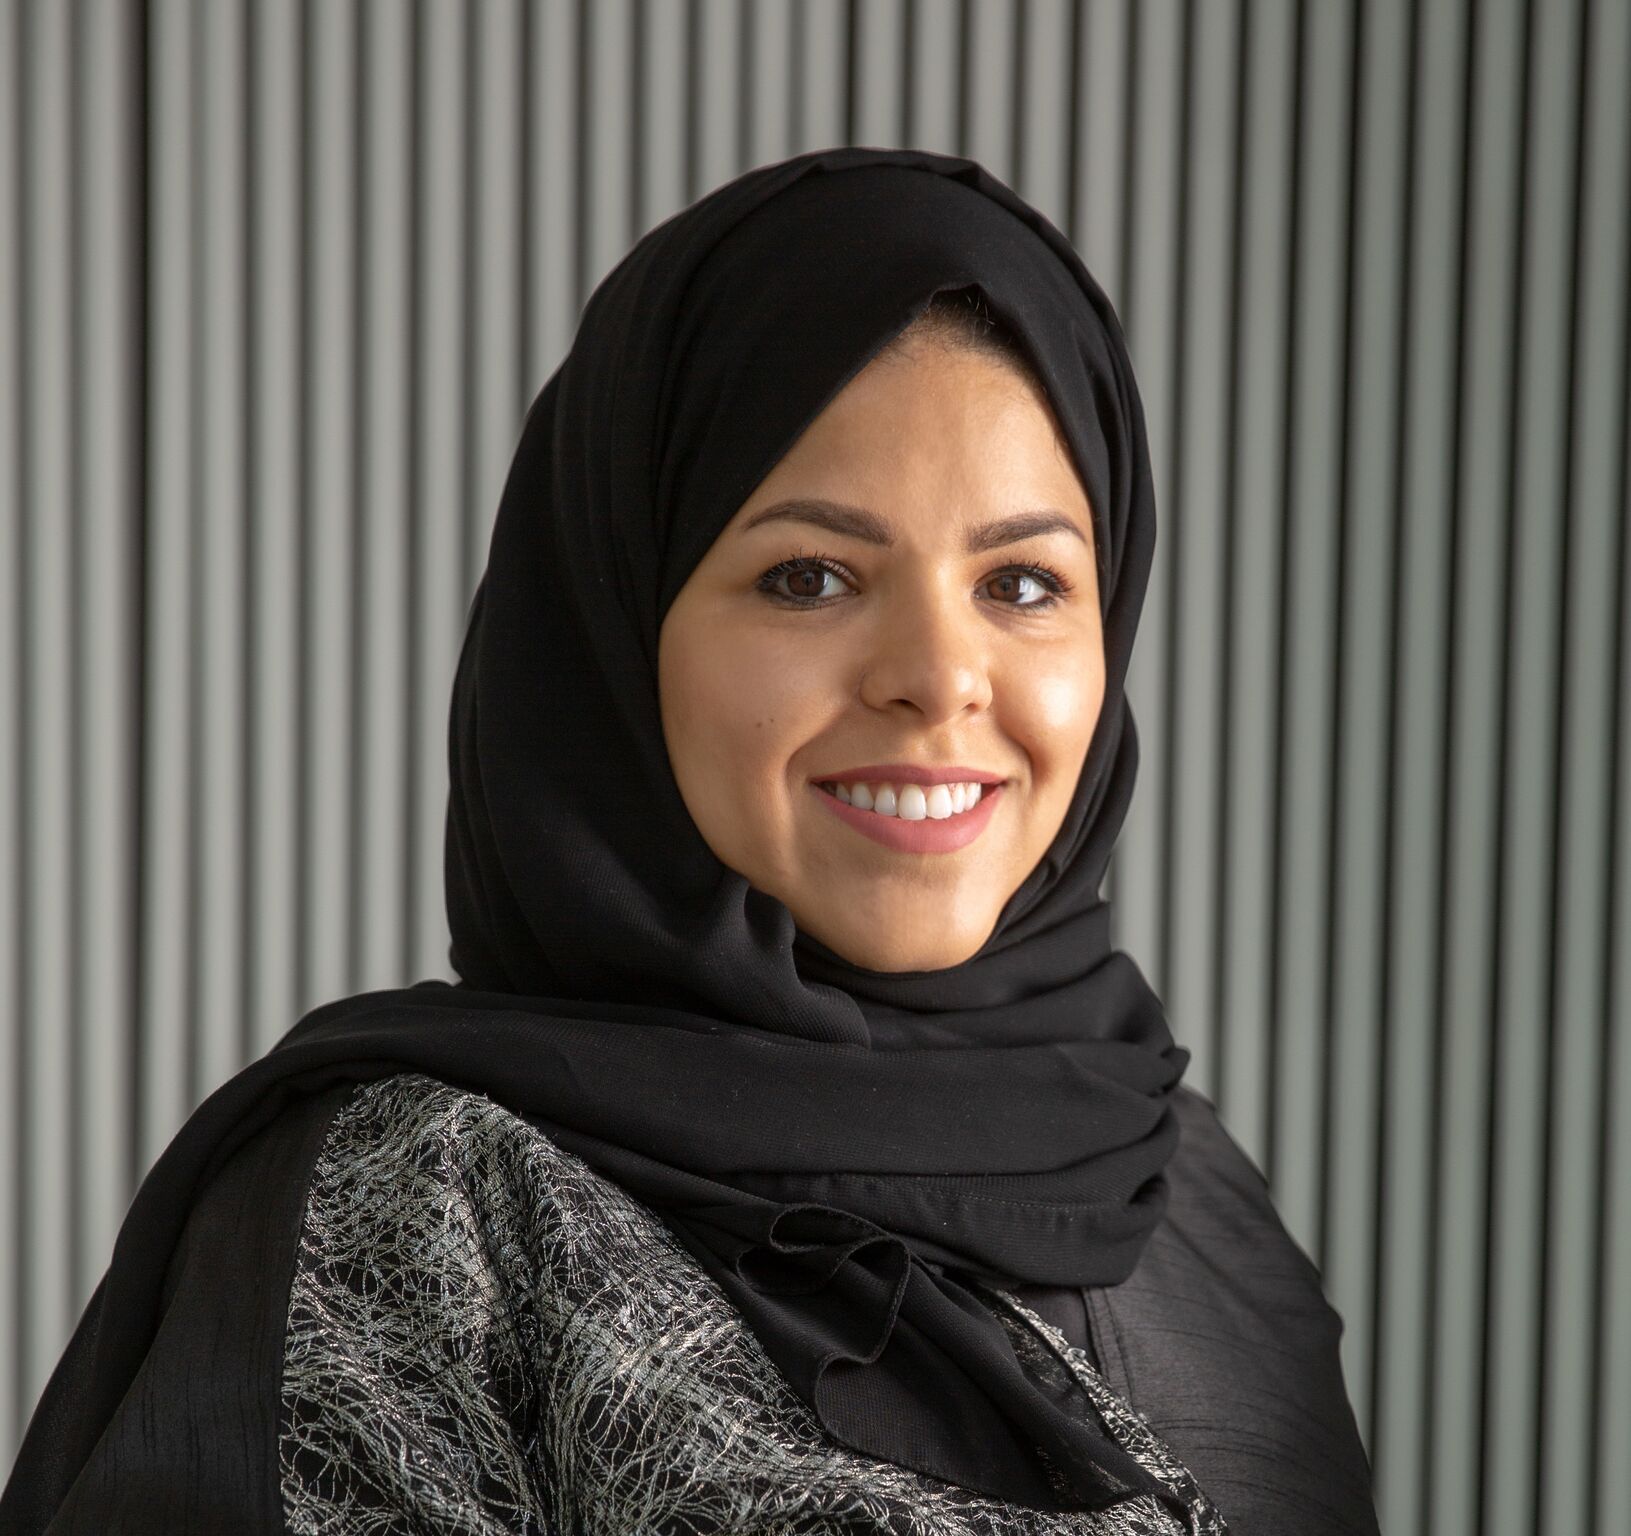 Dr. Shada Alsalamah